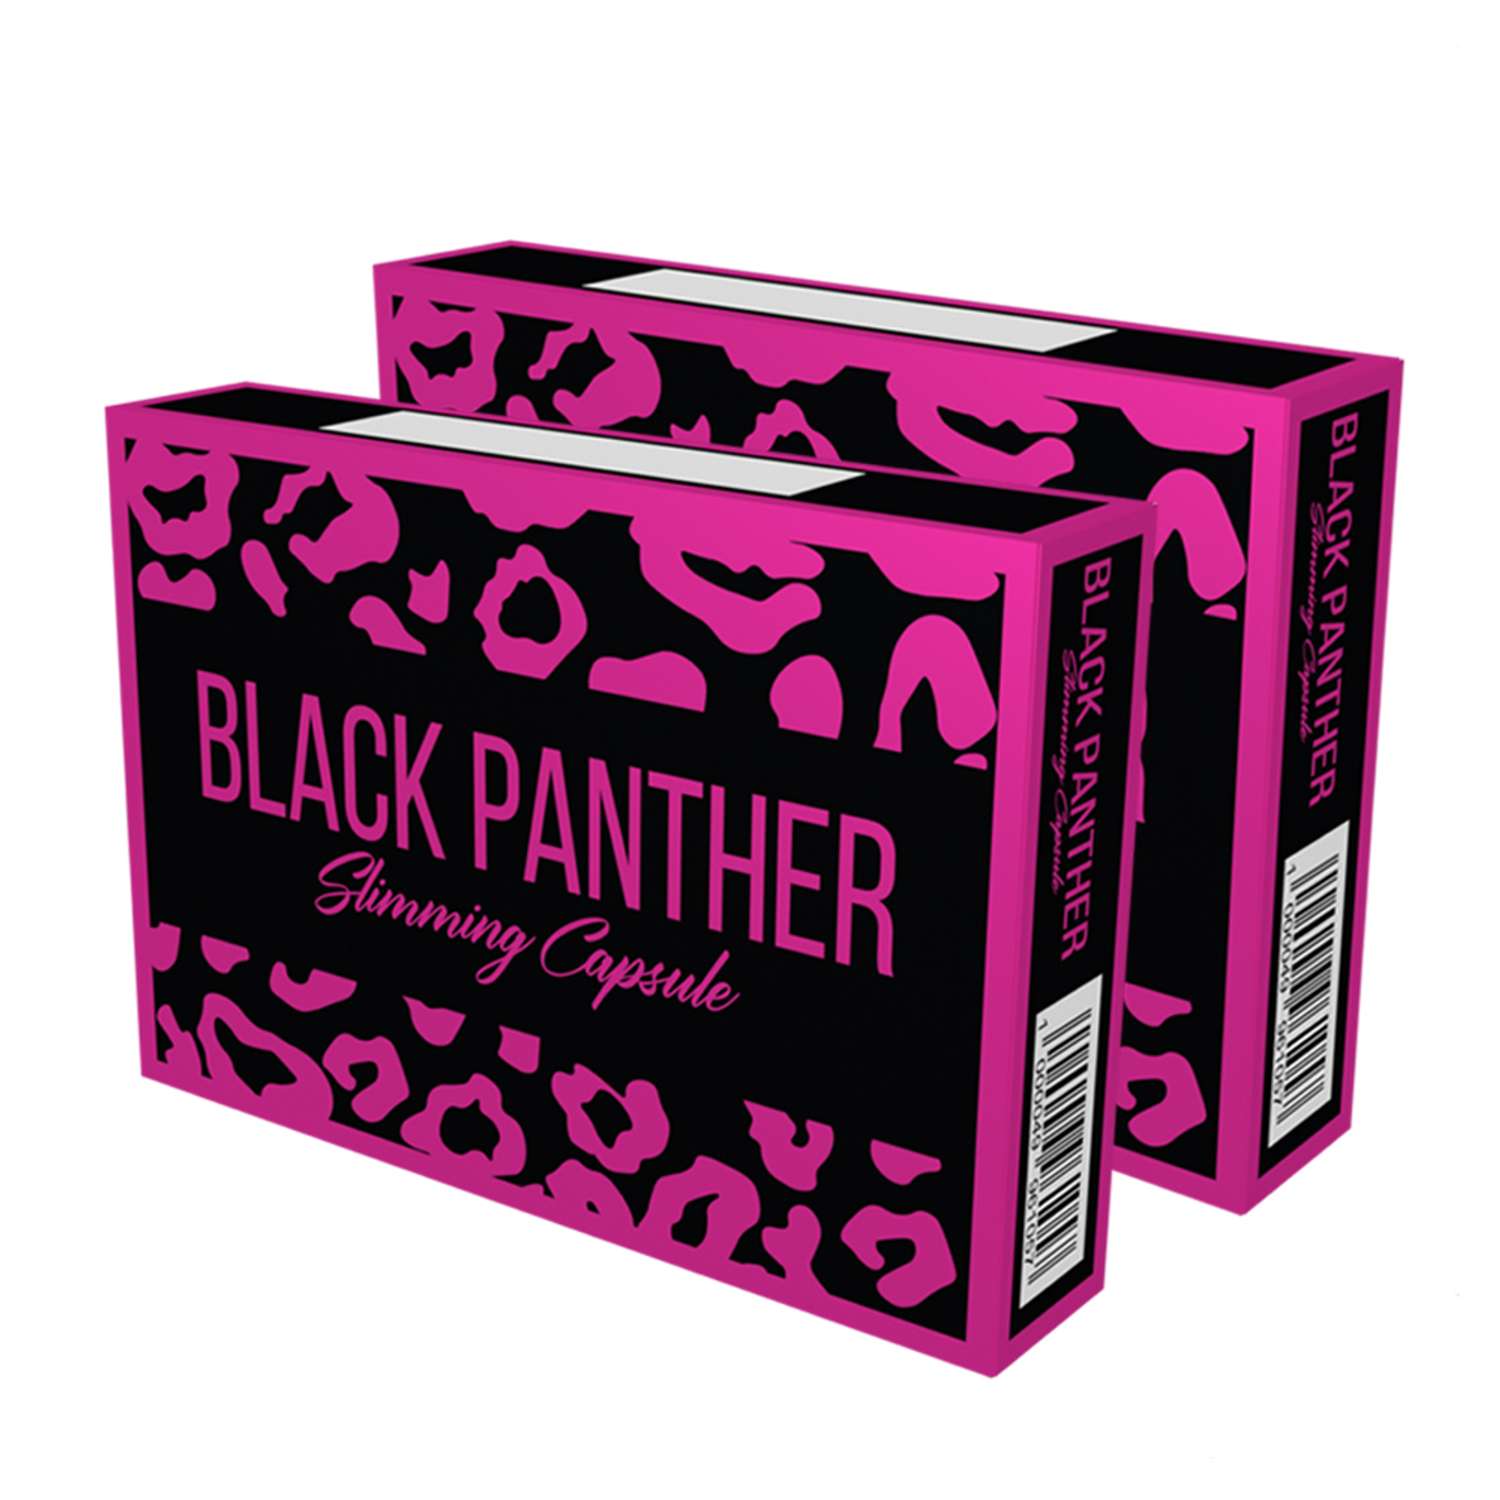 Черная пантера капсулы BLACK PANTHER для похудения жиросжигатель набор 2 упаковки - фото 1